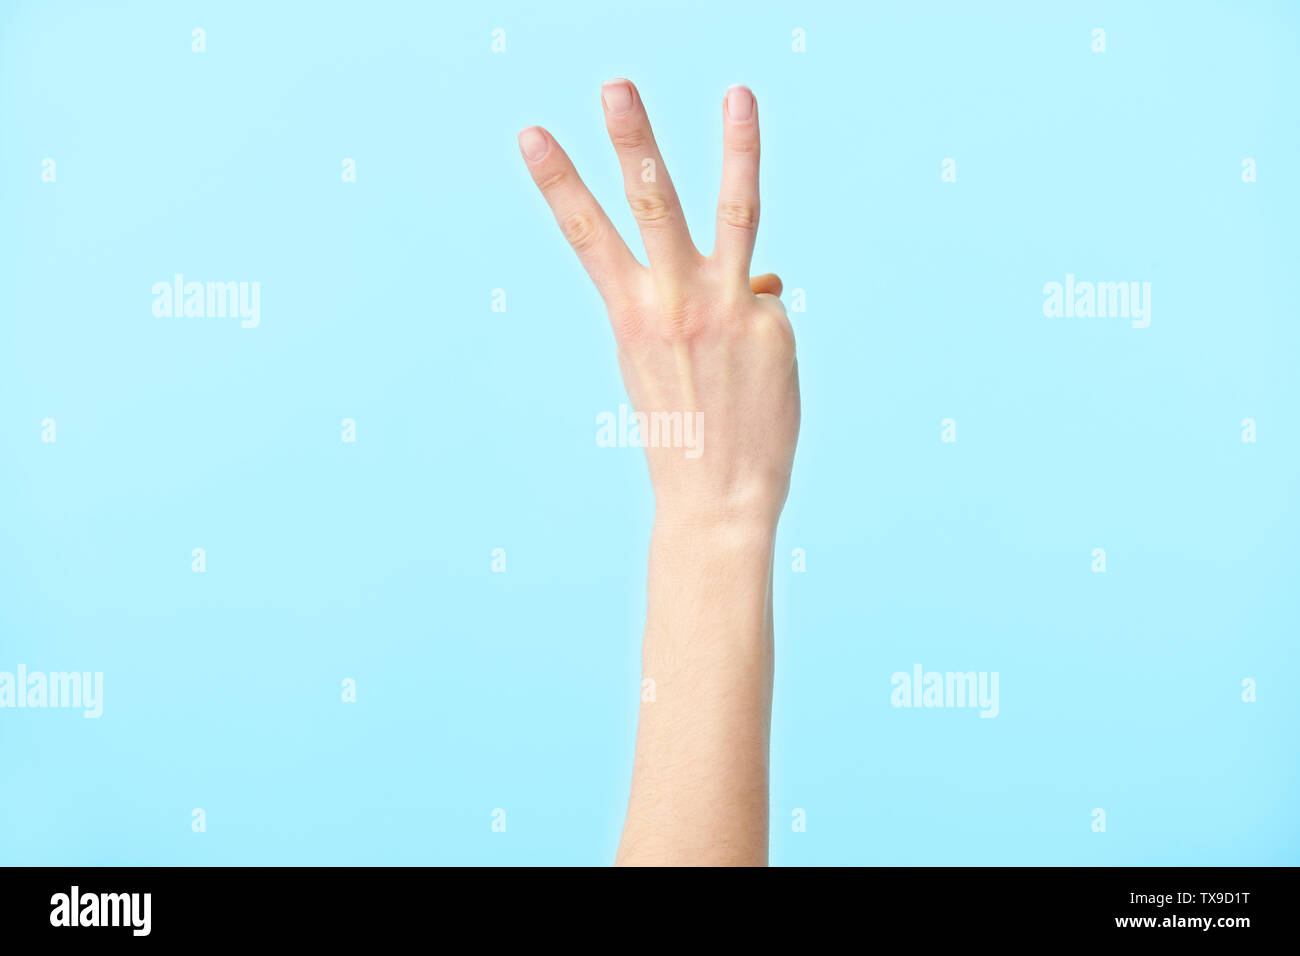 Menschliche Hand zeigt die Nummer drei, auf blauem Hintergrund isoliert Stockfoto